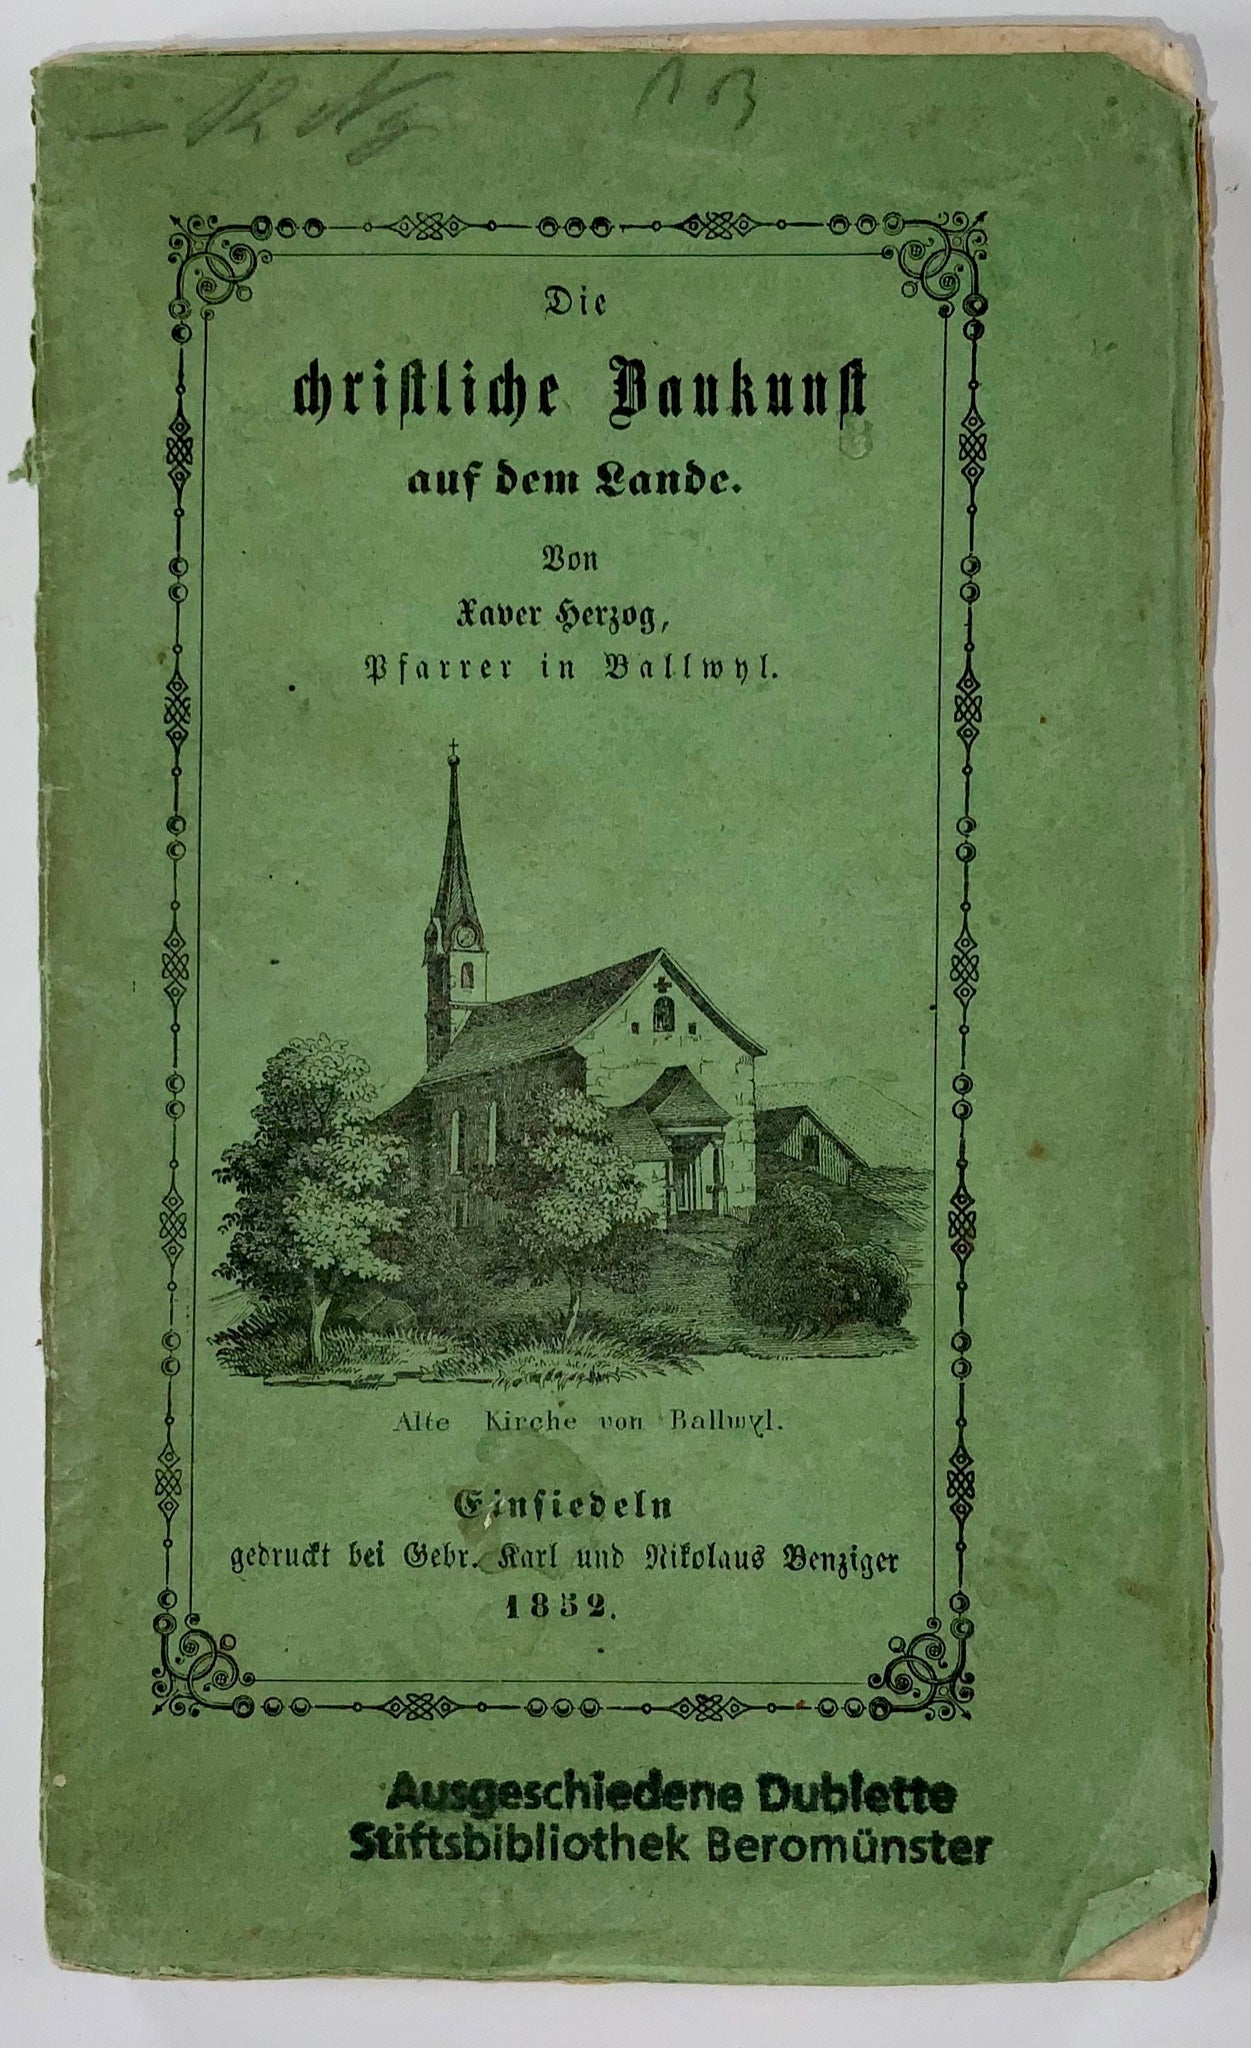 1852 Architecture d'églises rurales en Suisse. Christliche Baukunst, X. Herzog, livre